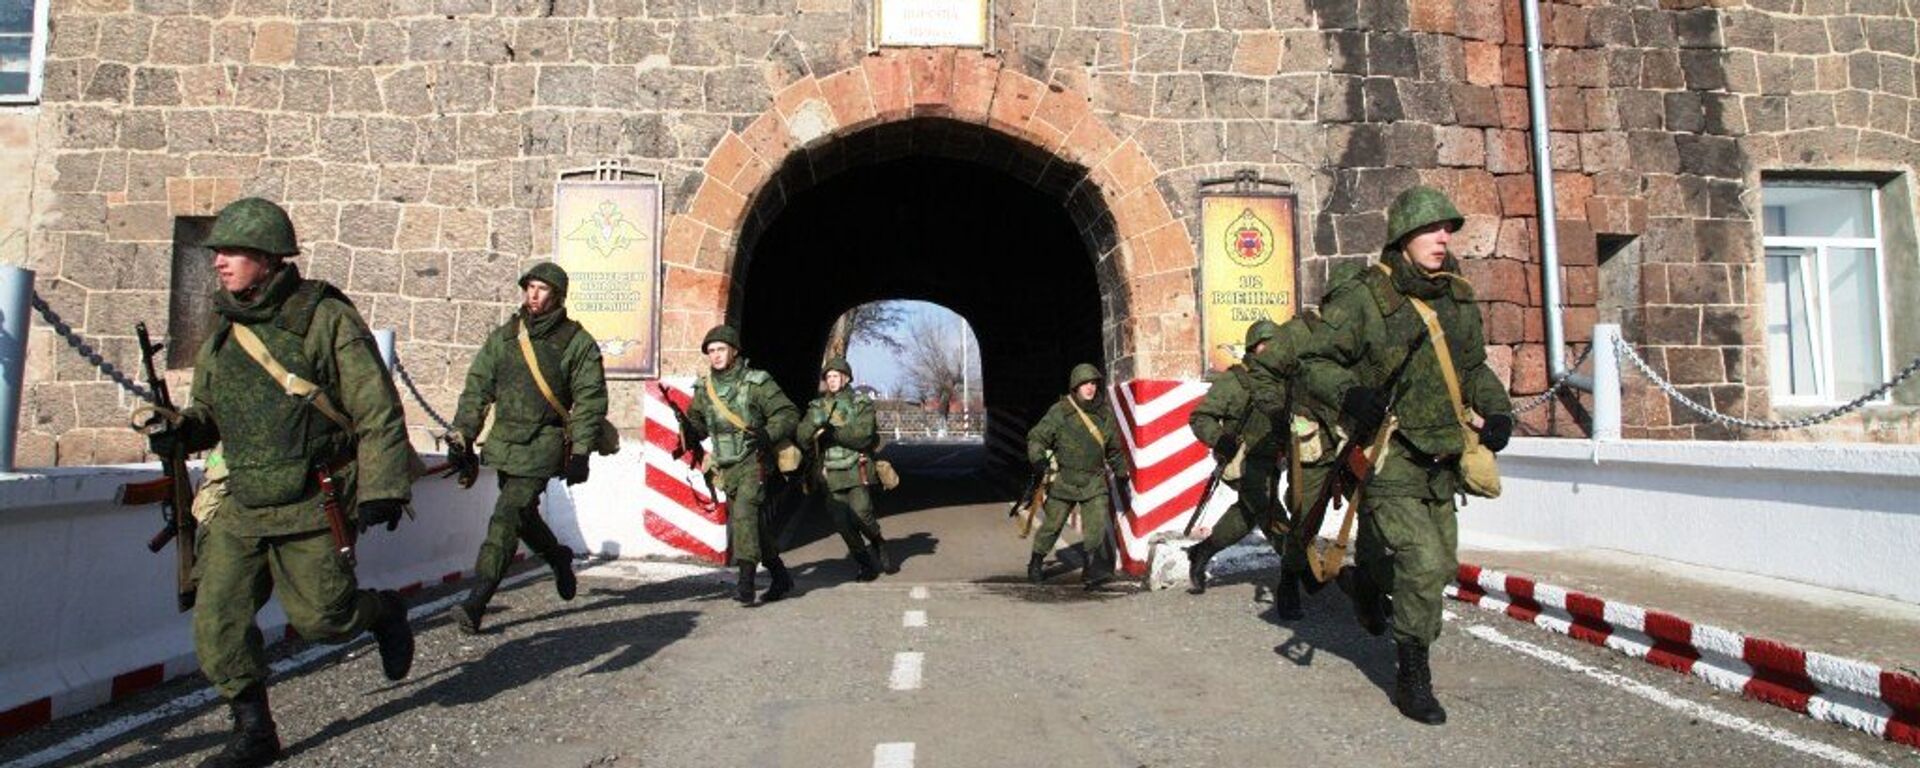 В Армении военнослужащие отразили атаку на штаб военной базы ЮВО условной диверсионной группы. - Sputnik Армения, 1920, 29.06.2021